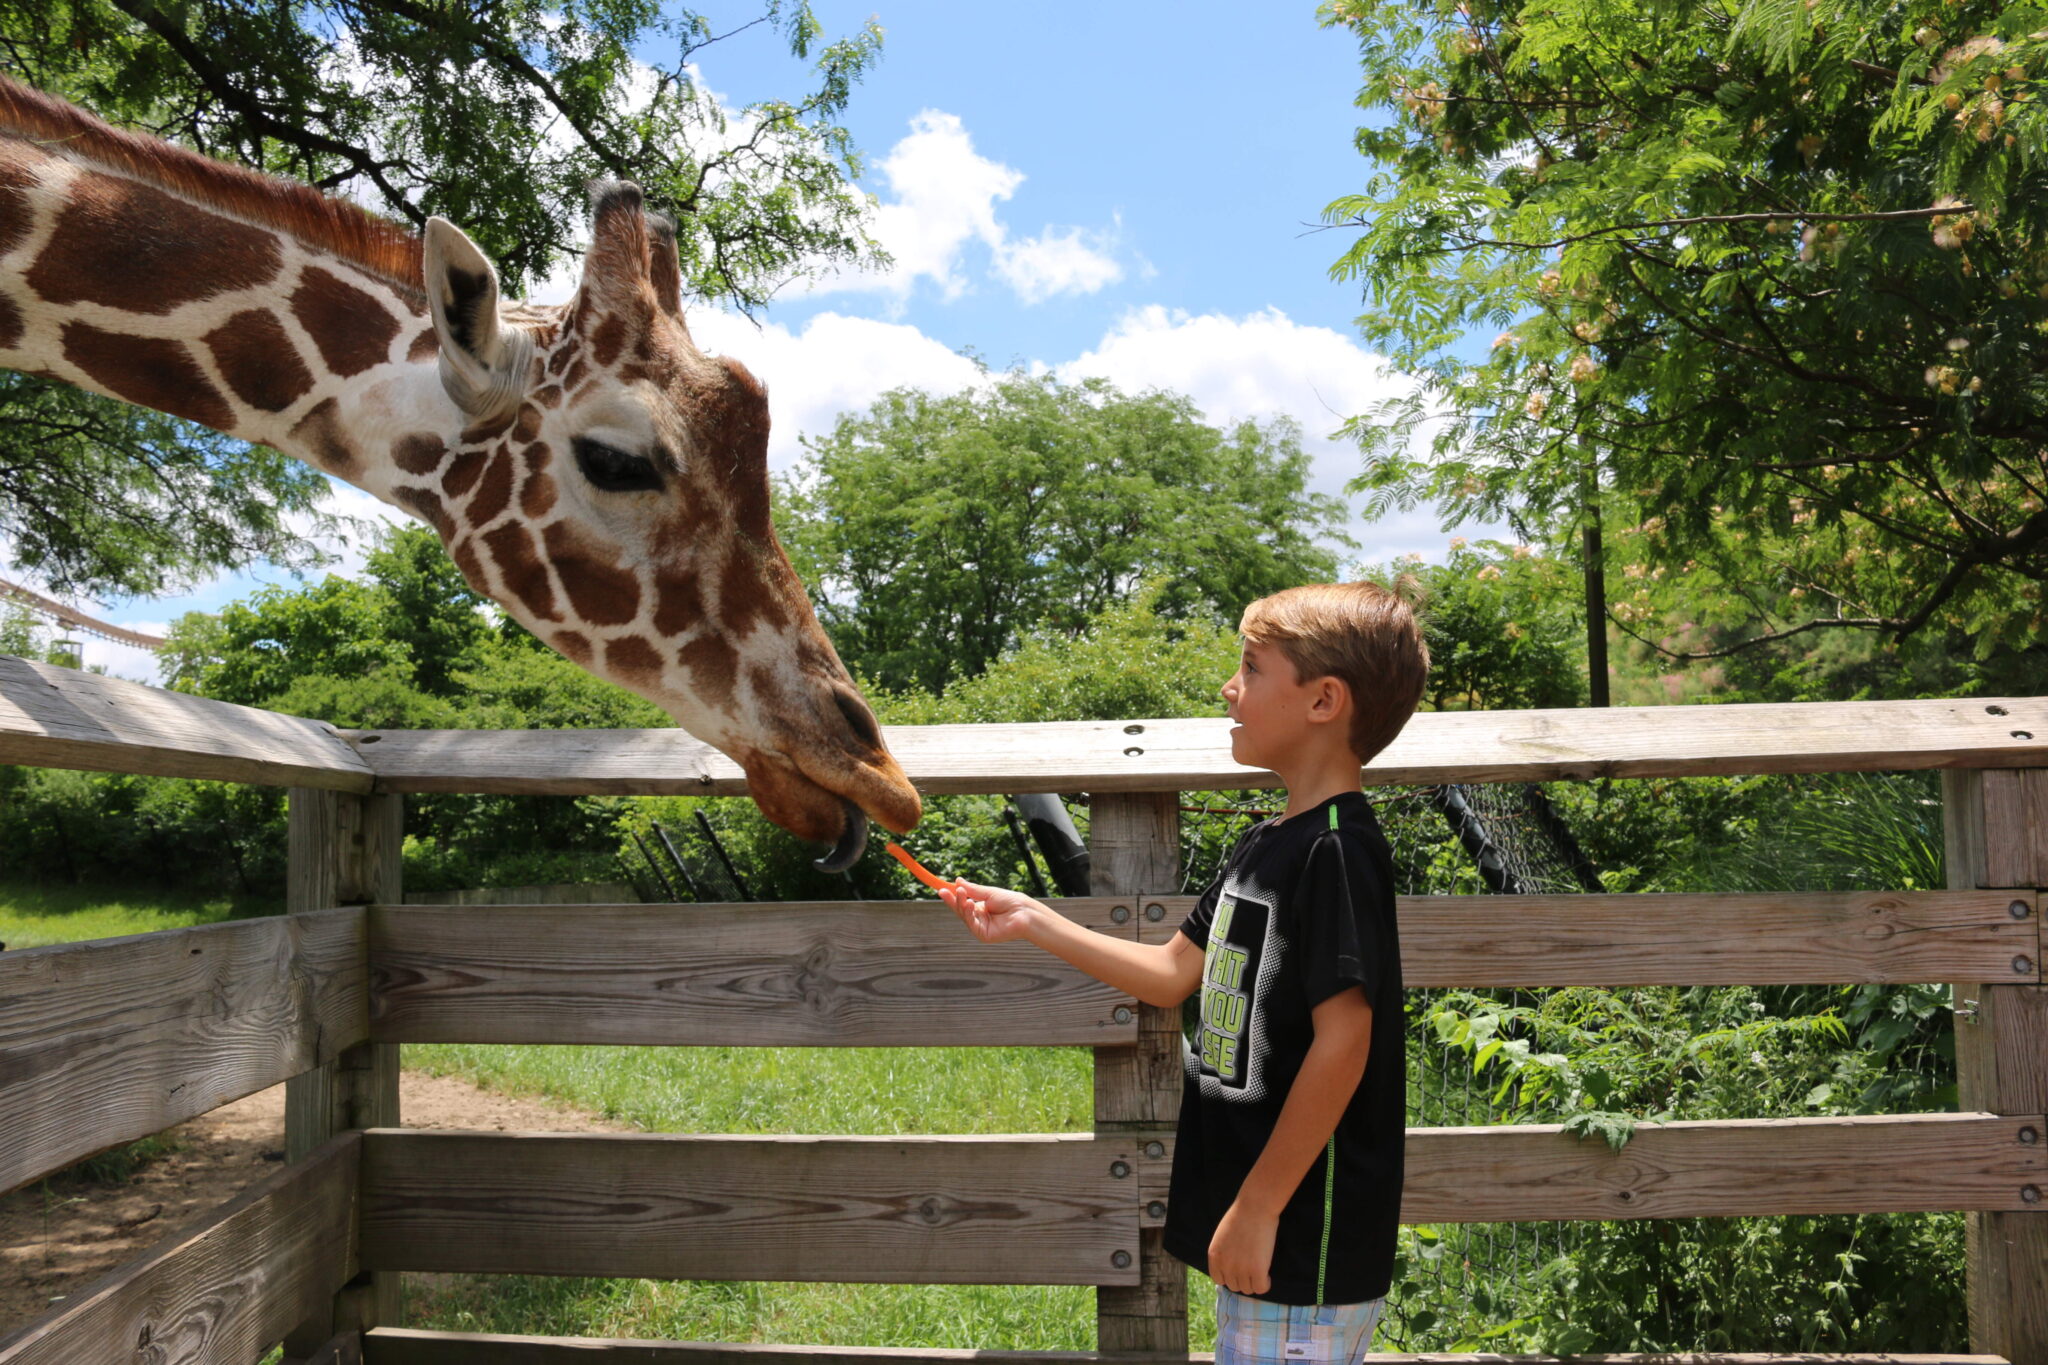 Boy feeding giraffe - 2022